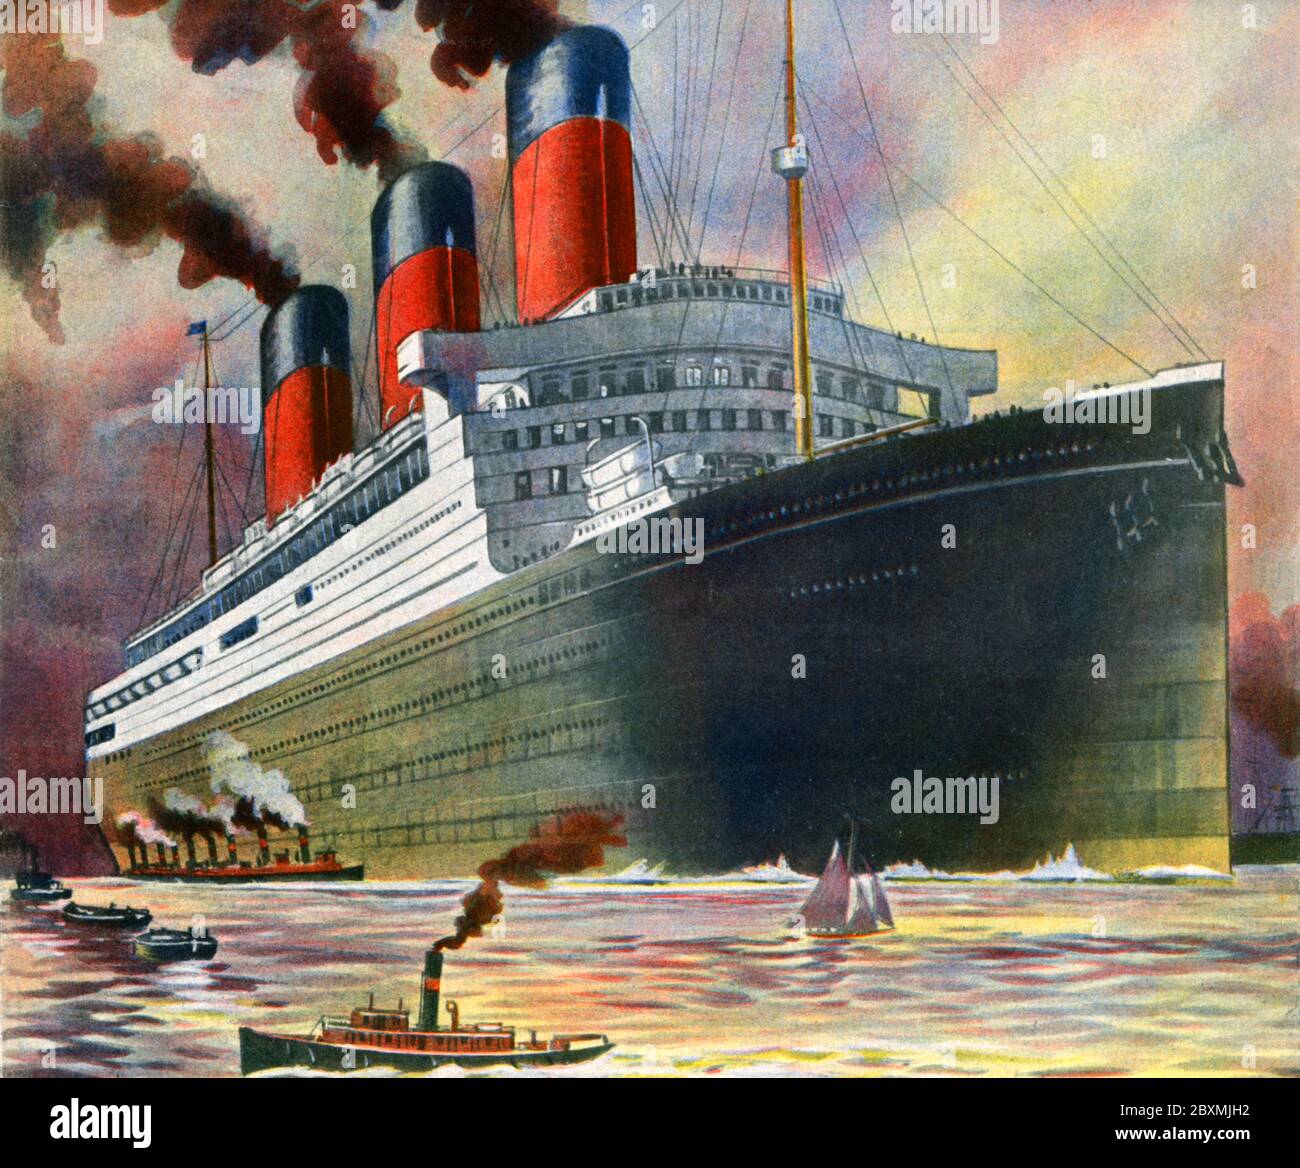 RMS Majestic. Ein 1914 errichtetes Schiff, ursprünglich SS Bismarck genannt. Sie war 291 Meter lang und dauerte 3500 Passanten. White Star Line hatte das Schiff in fünf Tagen, 18 Stunden, 8 Minuten mit einer Reisegeschwindigkeit von durchschnittlich 20,1 Knoten den atlantik überqueren lassen. Abbildung aus dem Jahr 1923 Stockfoto